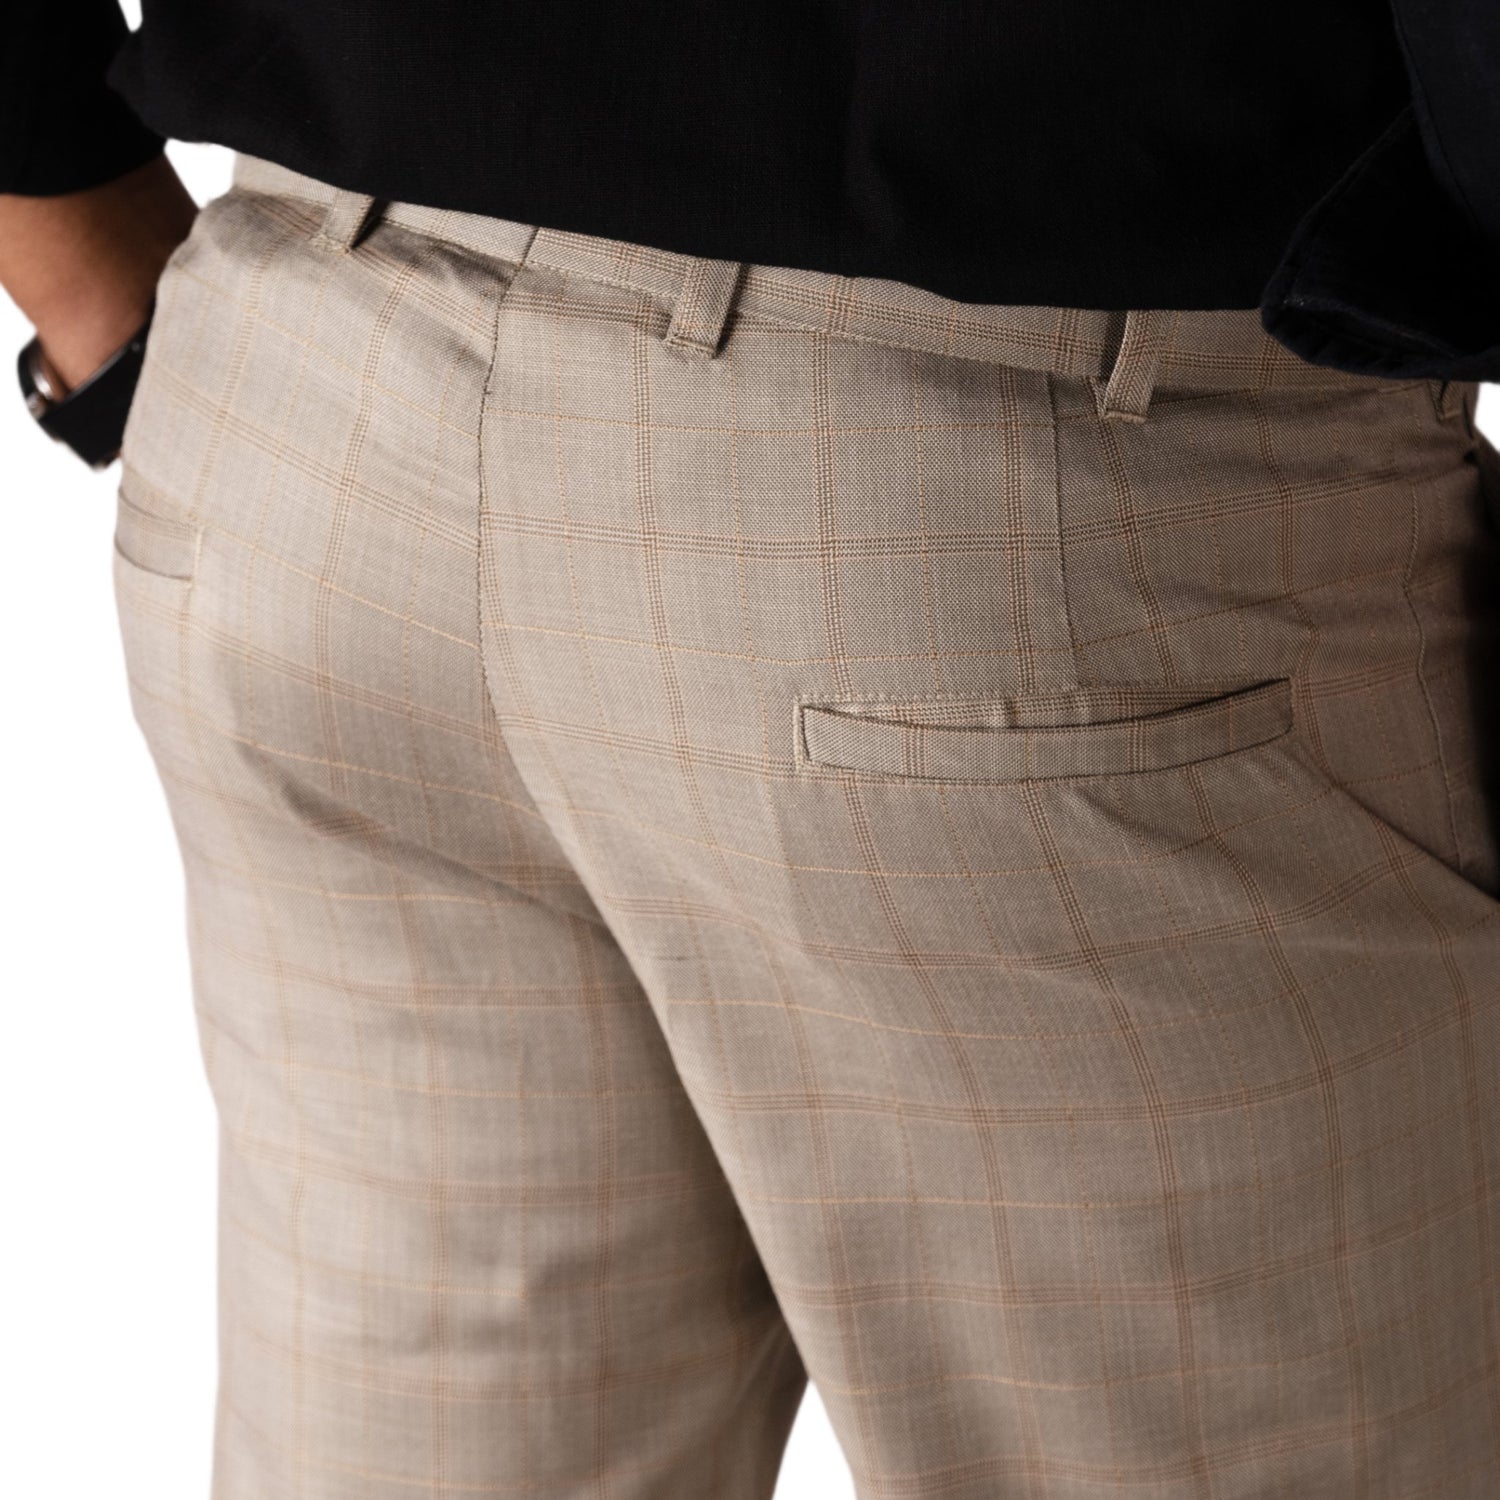 Tan color check blend cotton trousers pant for men - Punekar Cotton